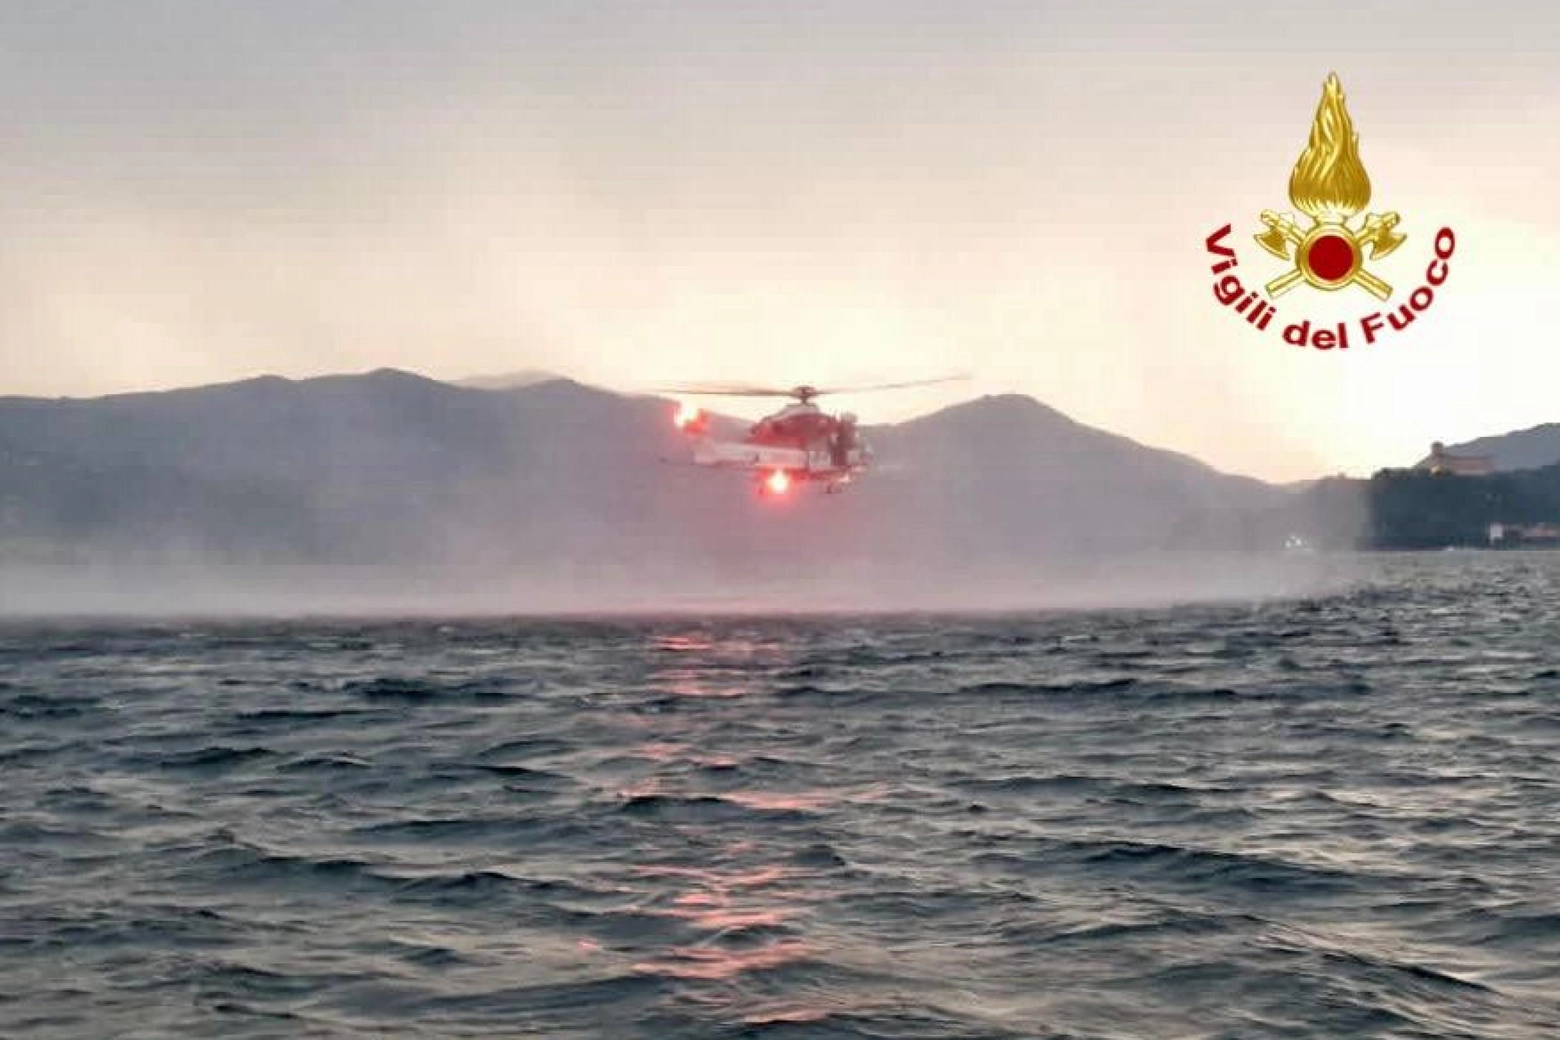 Elicottero in volo sul lago Maggiore per cercare i dispersi